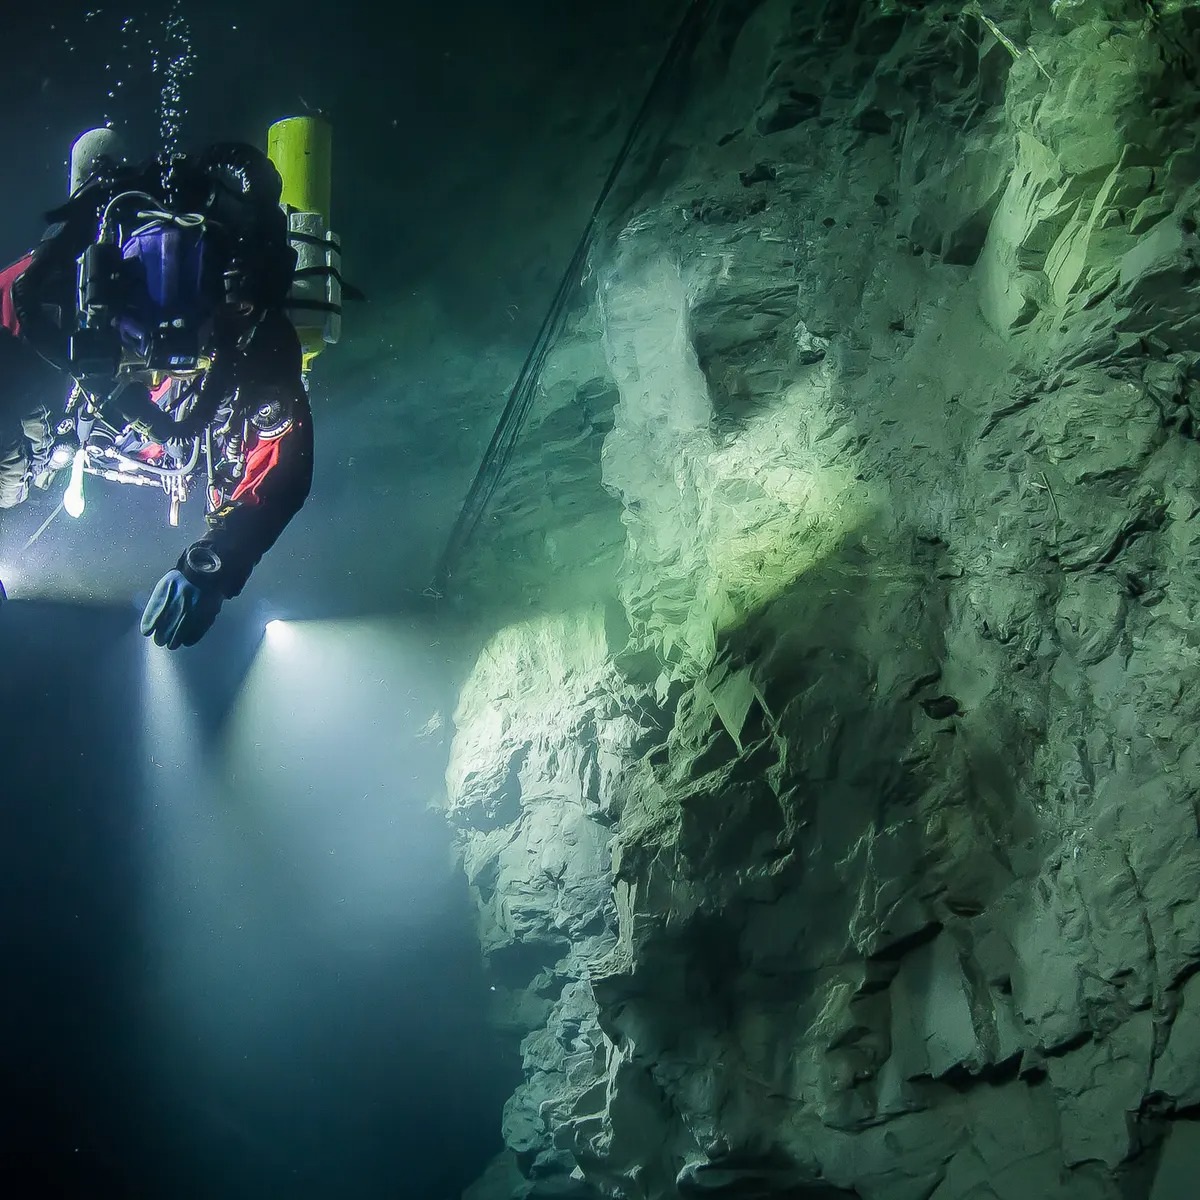 Bất ngờ phát hiện hang động nước ngọt có độ sâu nhất thế giới tại Cộng hòa Séc - Ảnh 2.